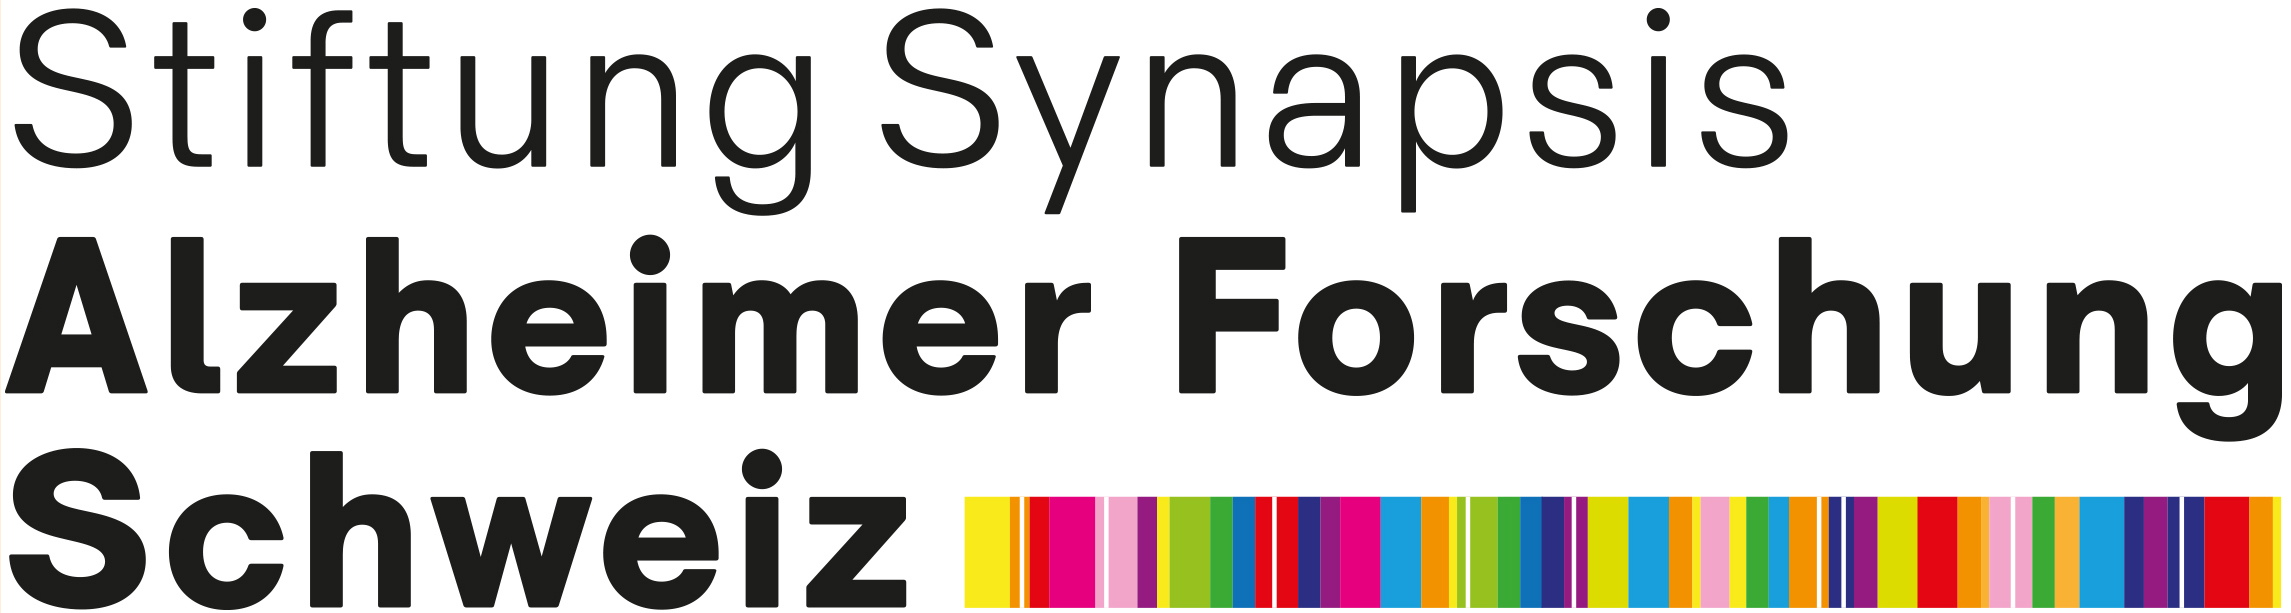 Stiftung Synapsis - Alzheimer Forschung Schweiz AFS